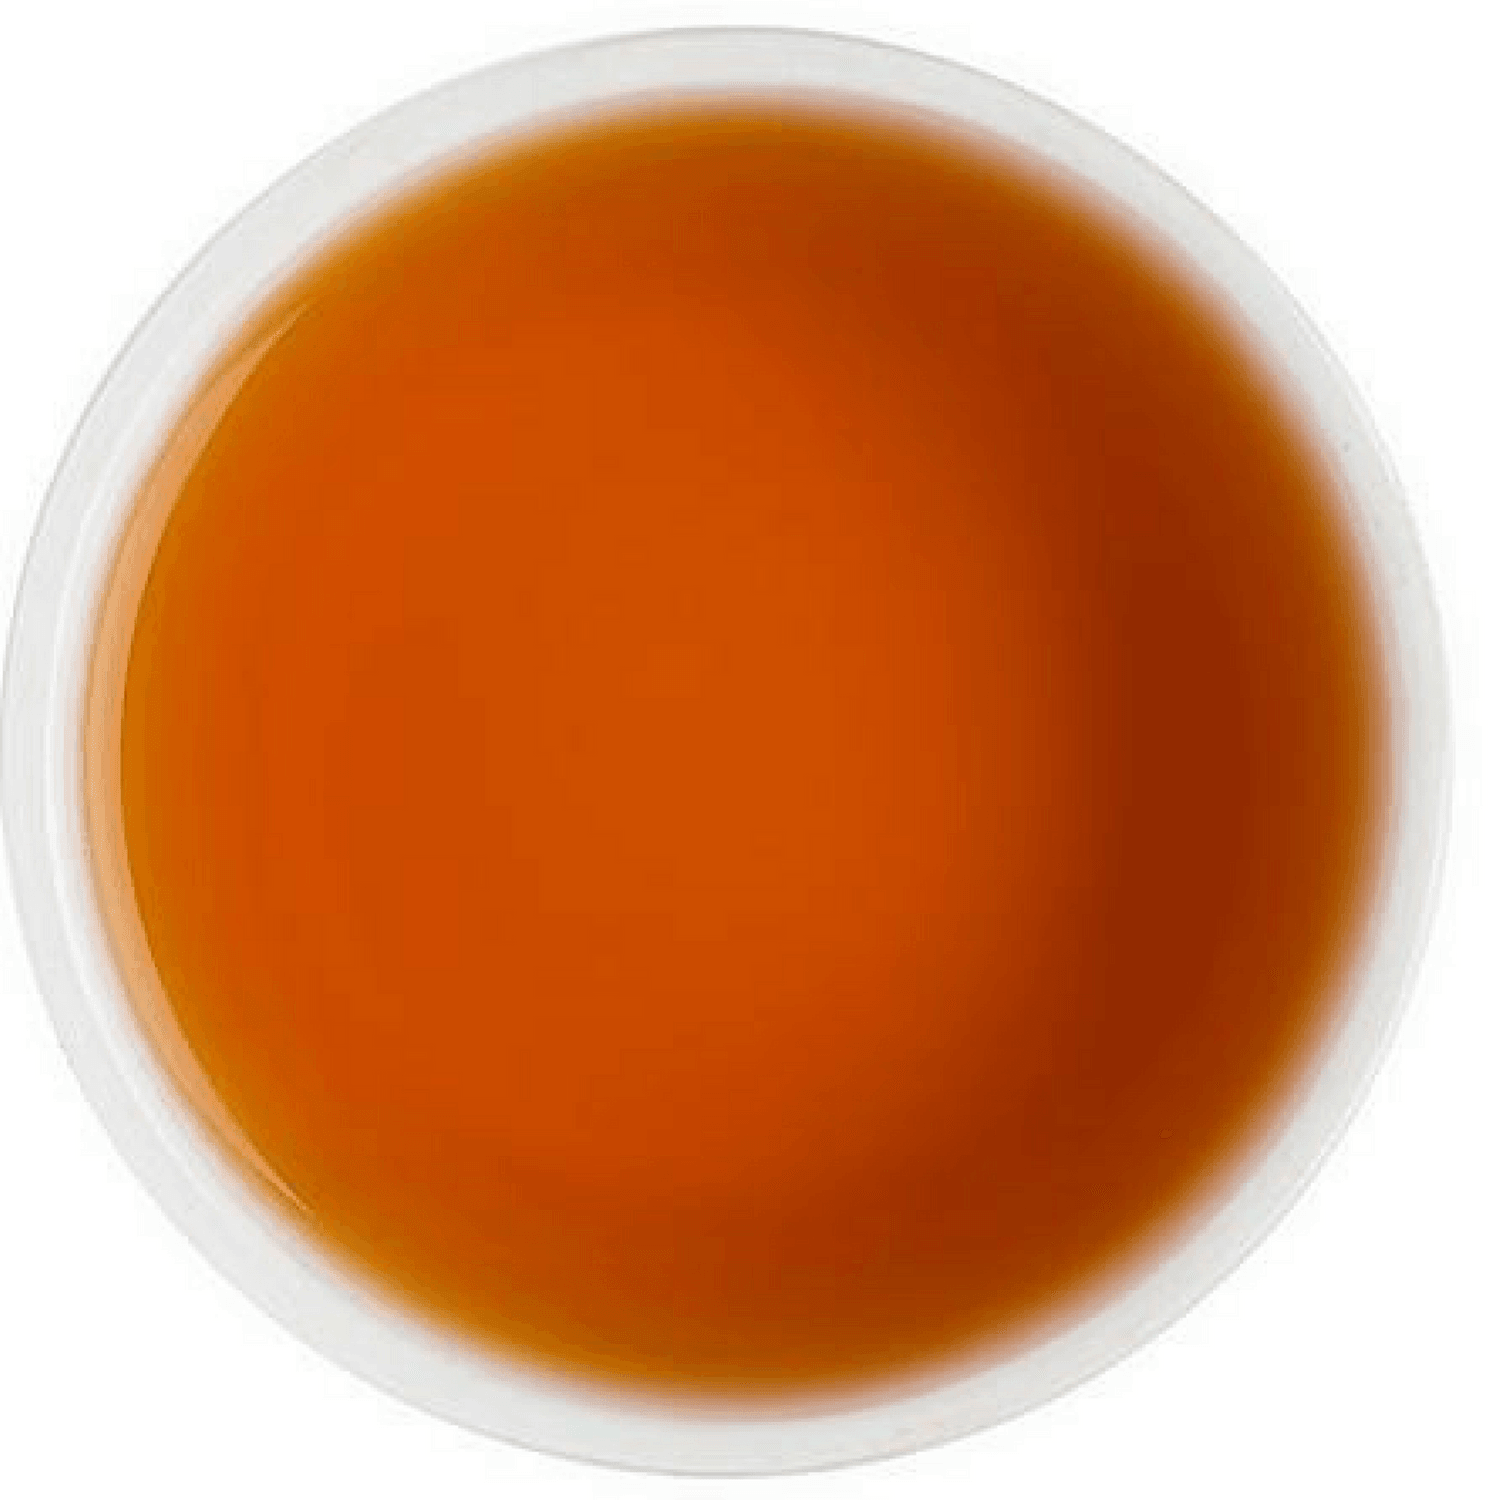 Darjeeling Masala Tea - Tearaja